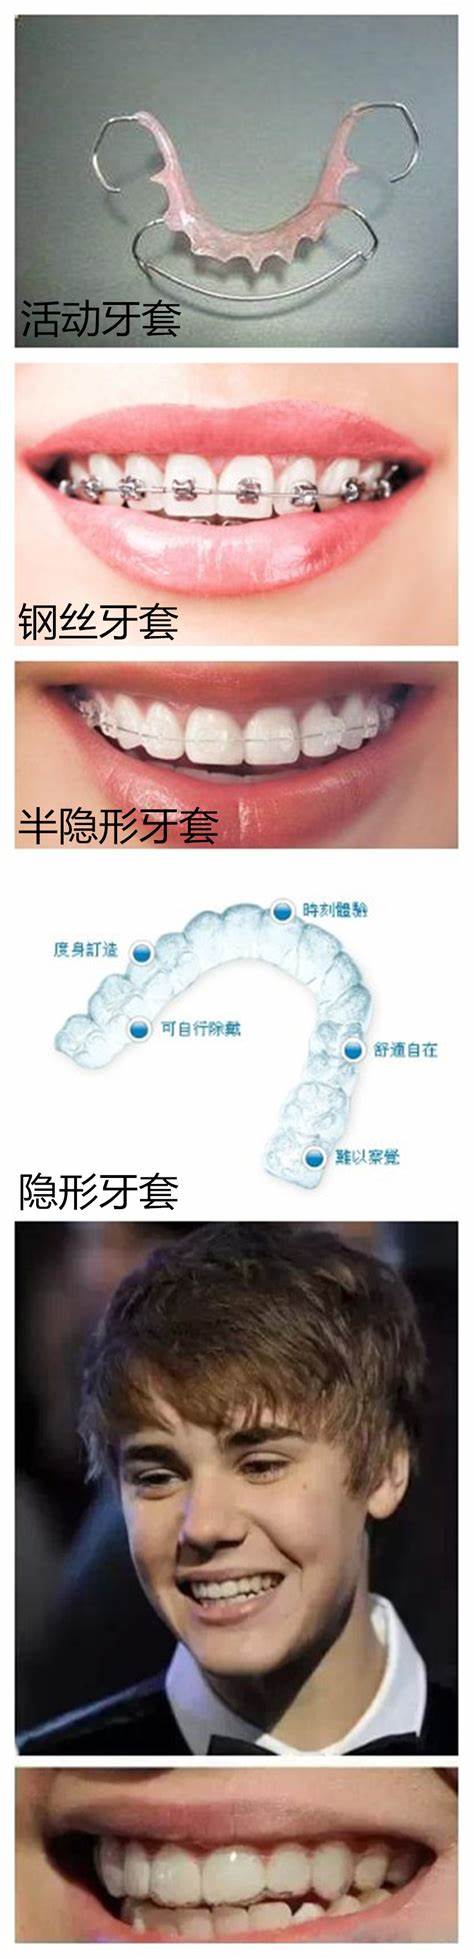 牙套和牙冠的区别